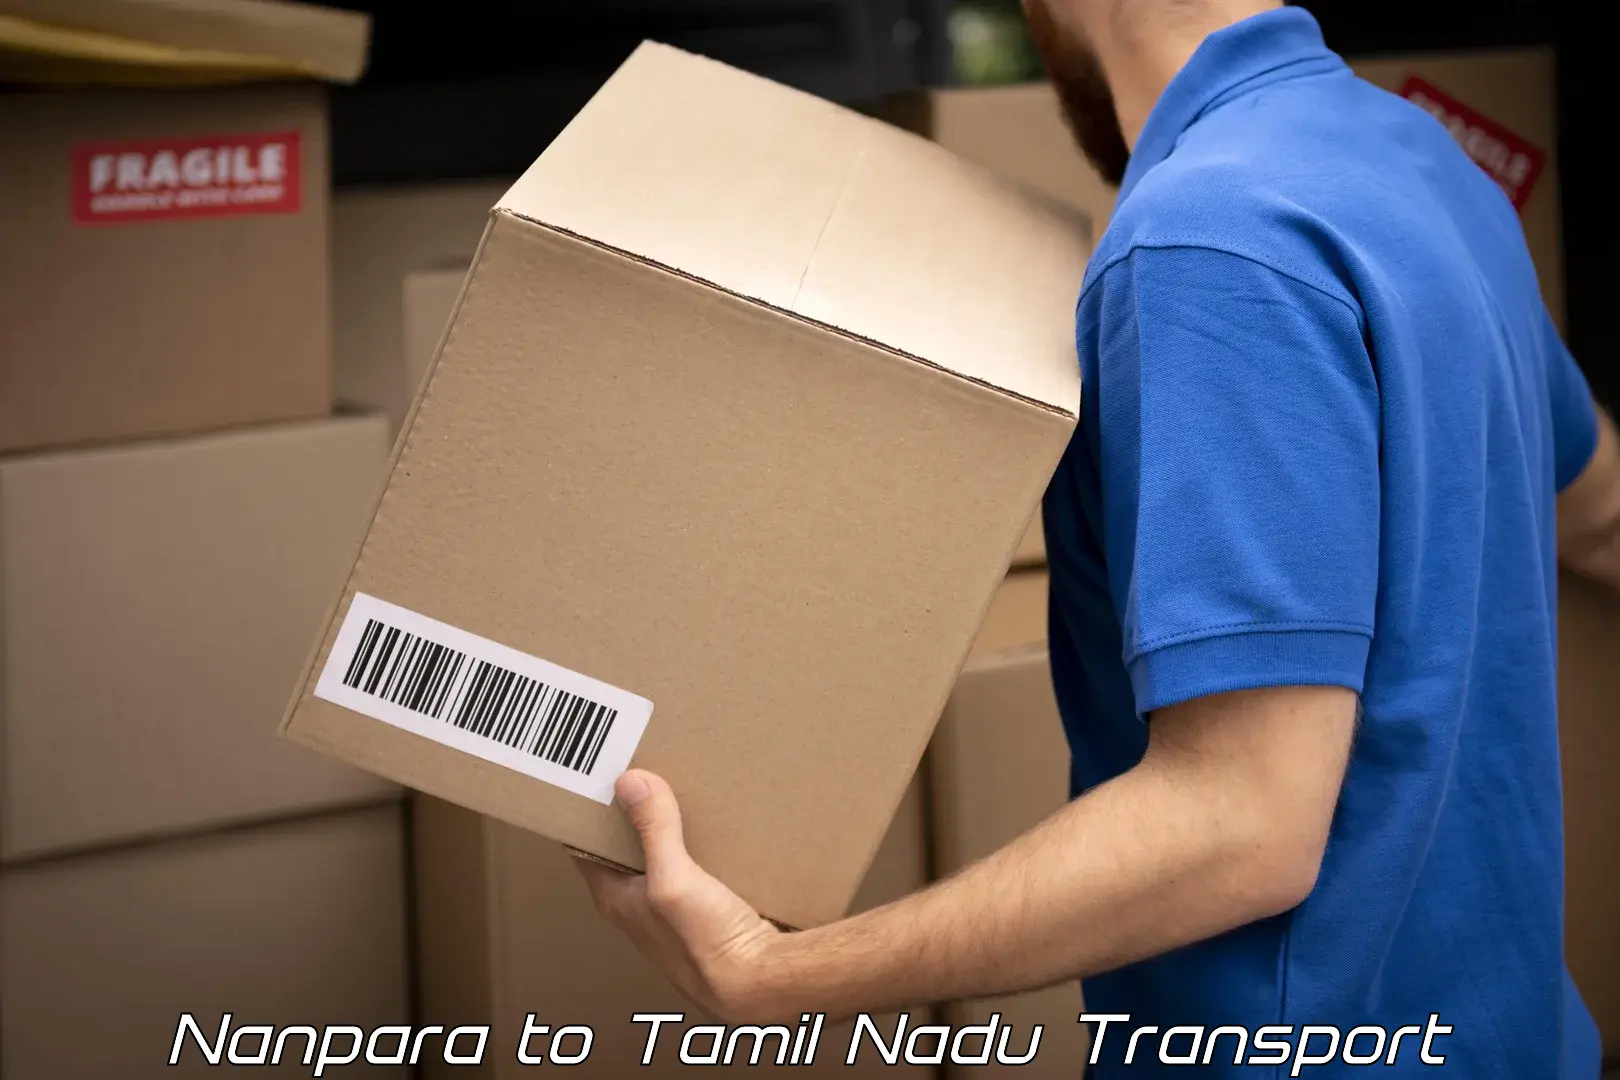 Interstate transport services Nanpara to Tiruturaipundi